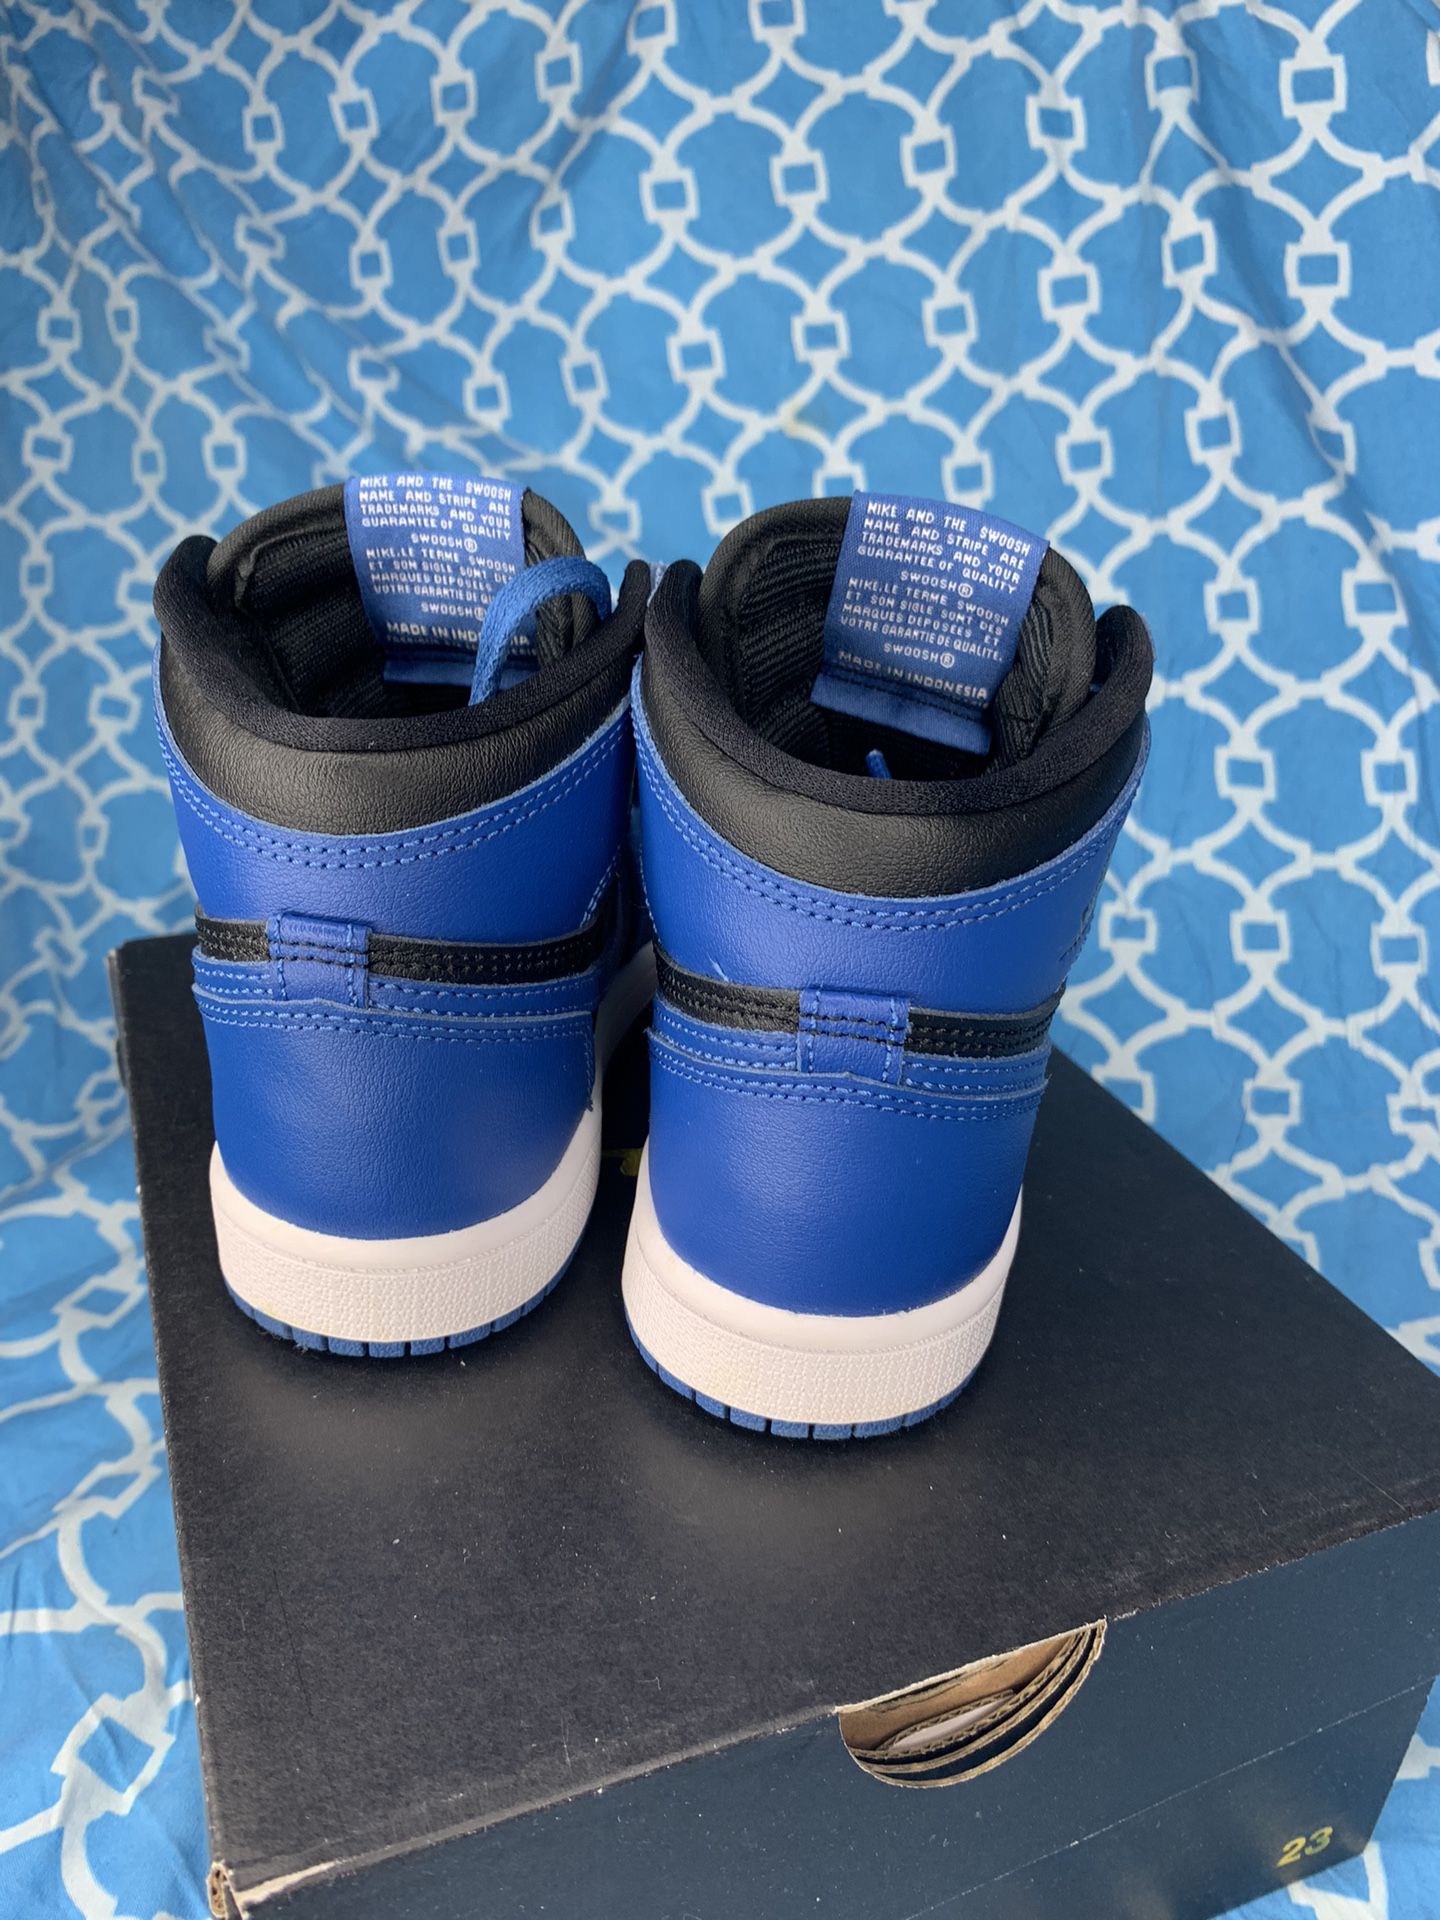 Nike Air Jordan 1 high PS size 1y Dark Marina blue retro og royal white